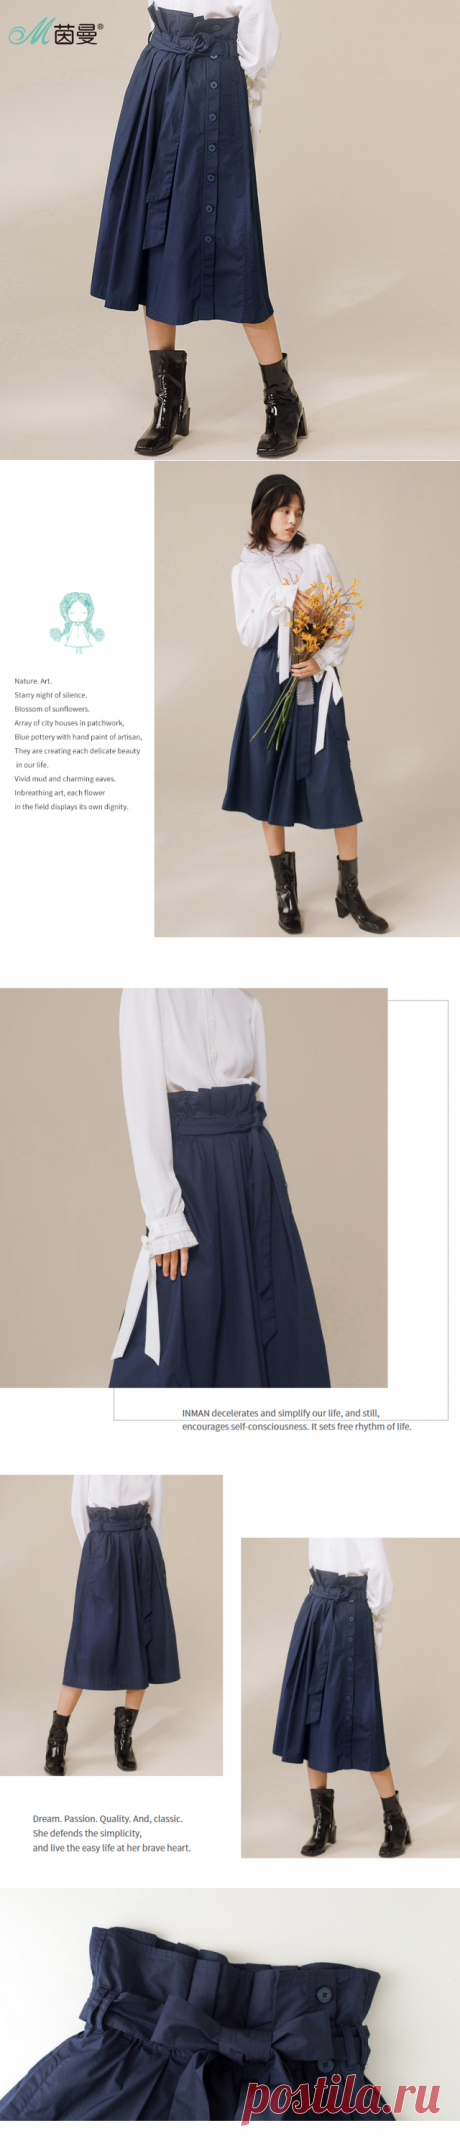 Инман осень 2017 г. среднего юбка Для женщин хлопок юбка в складку купить на AliExpress